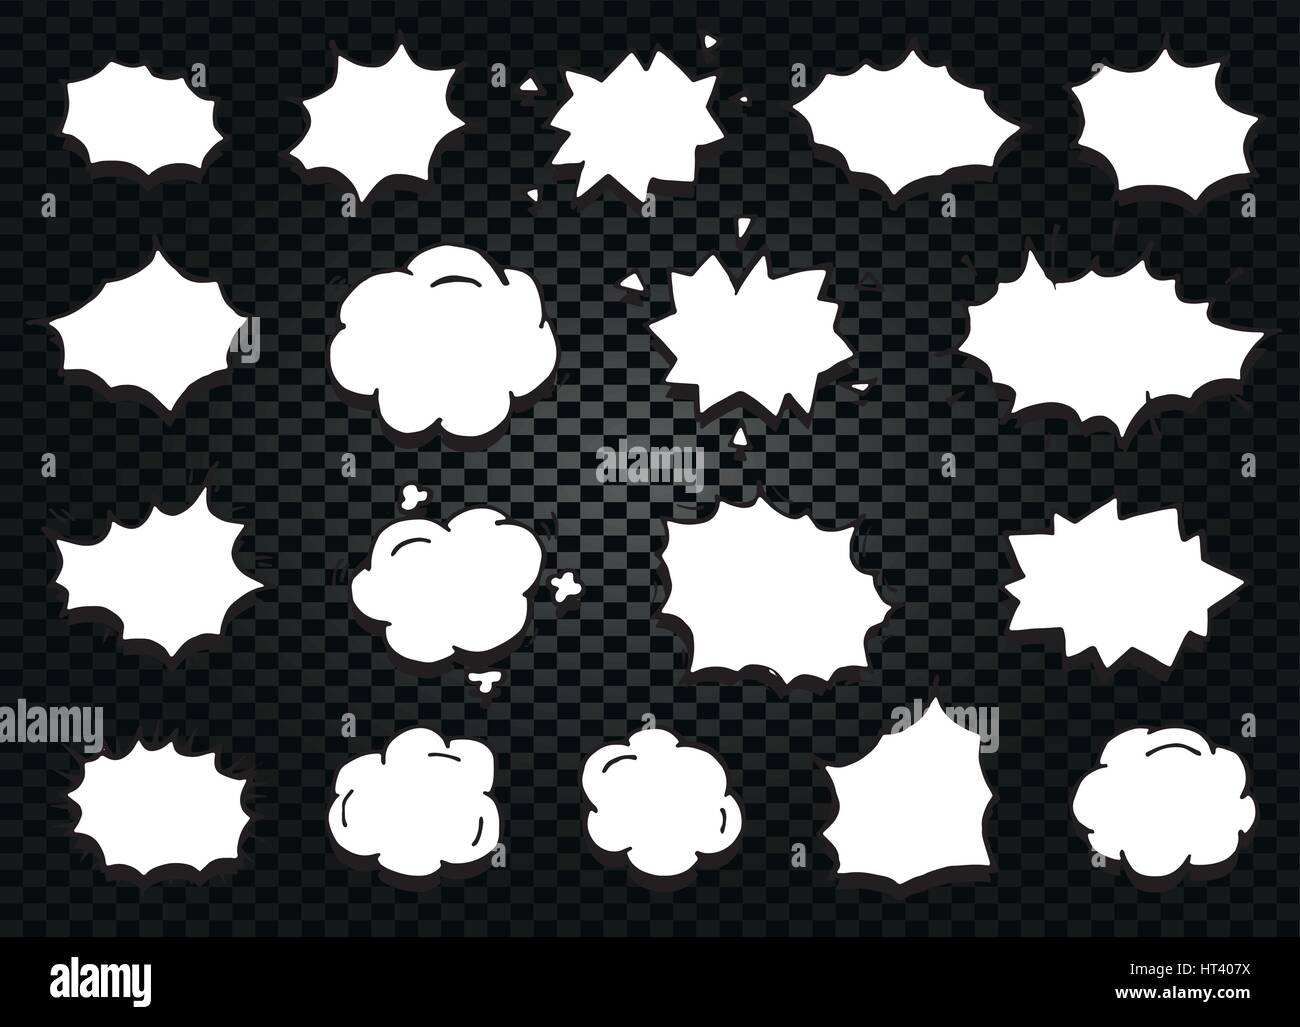 Résumé isolé noir et blanc couleur comics phylactère icons collection sur checkered background, boîtes de dialogue Définir les cadres de dialogue signes,vector illustration Illustration de Vecteur